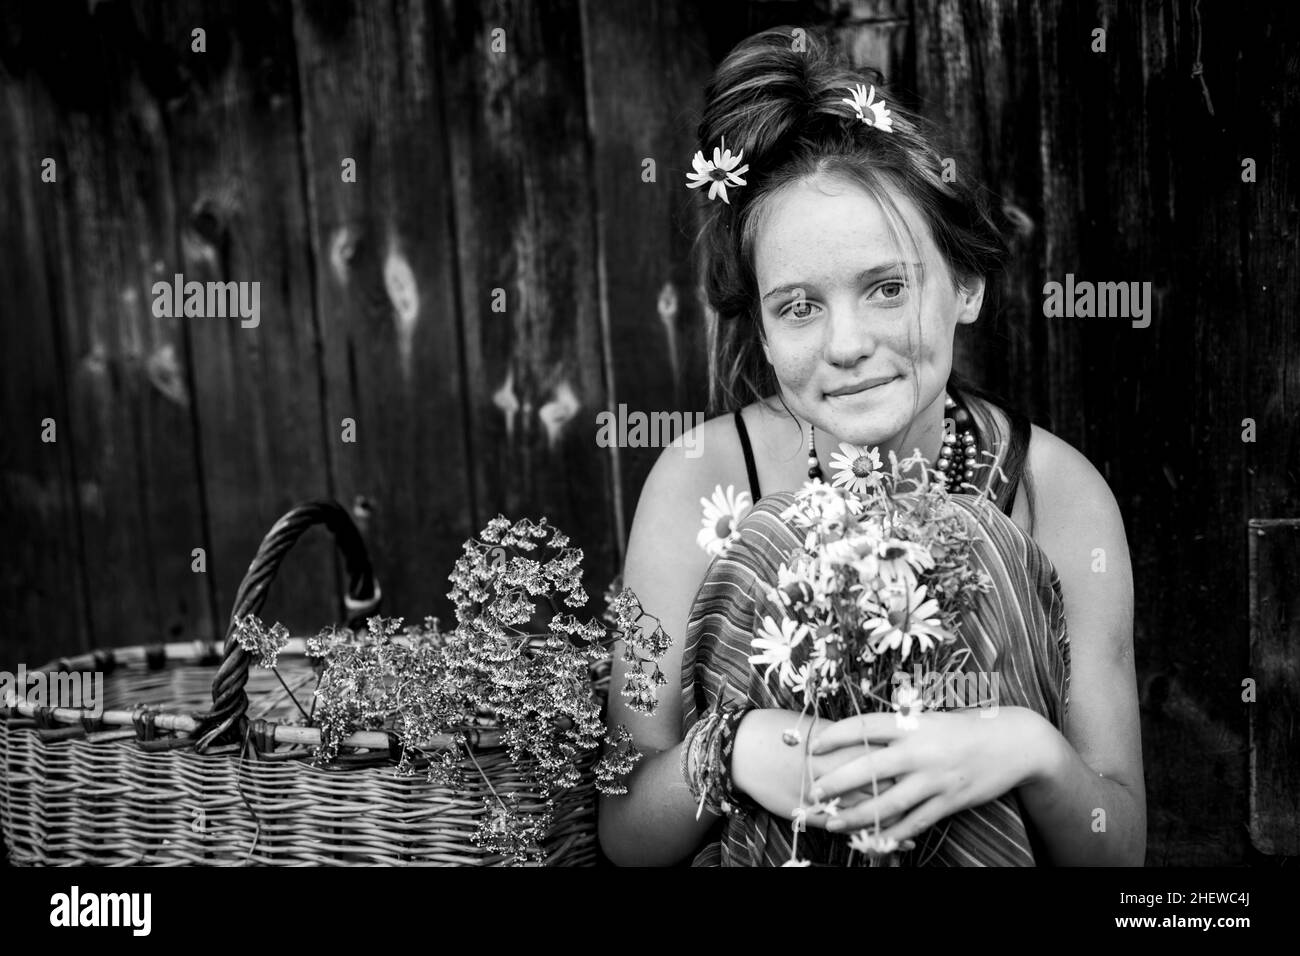 Ein Mädchen mit Gänseblümchen und einem Korb. Schwarzweiß-Foto. Stockfoto